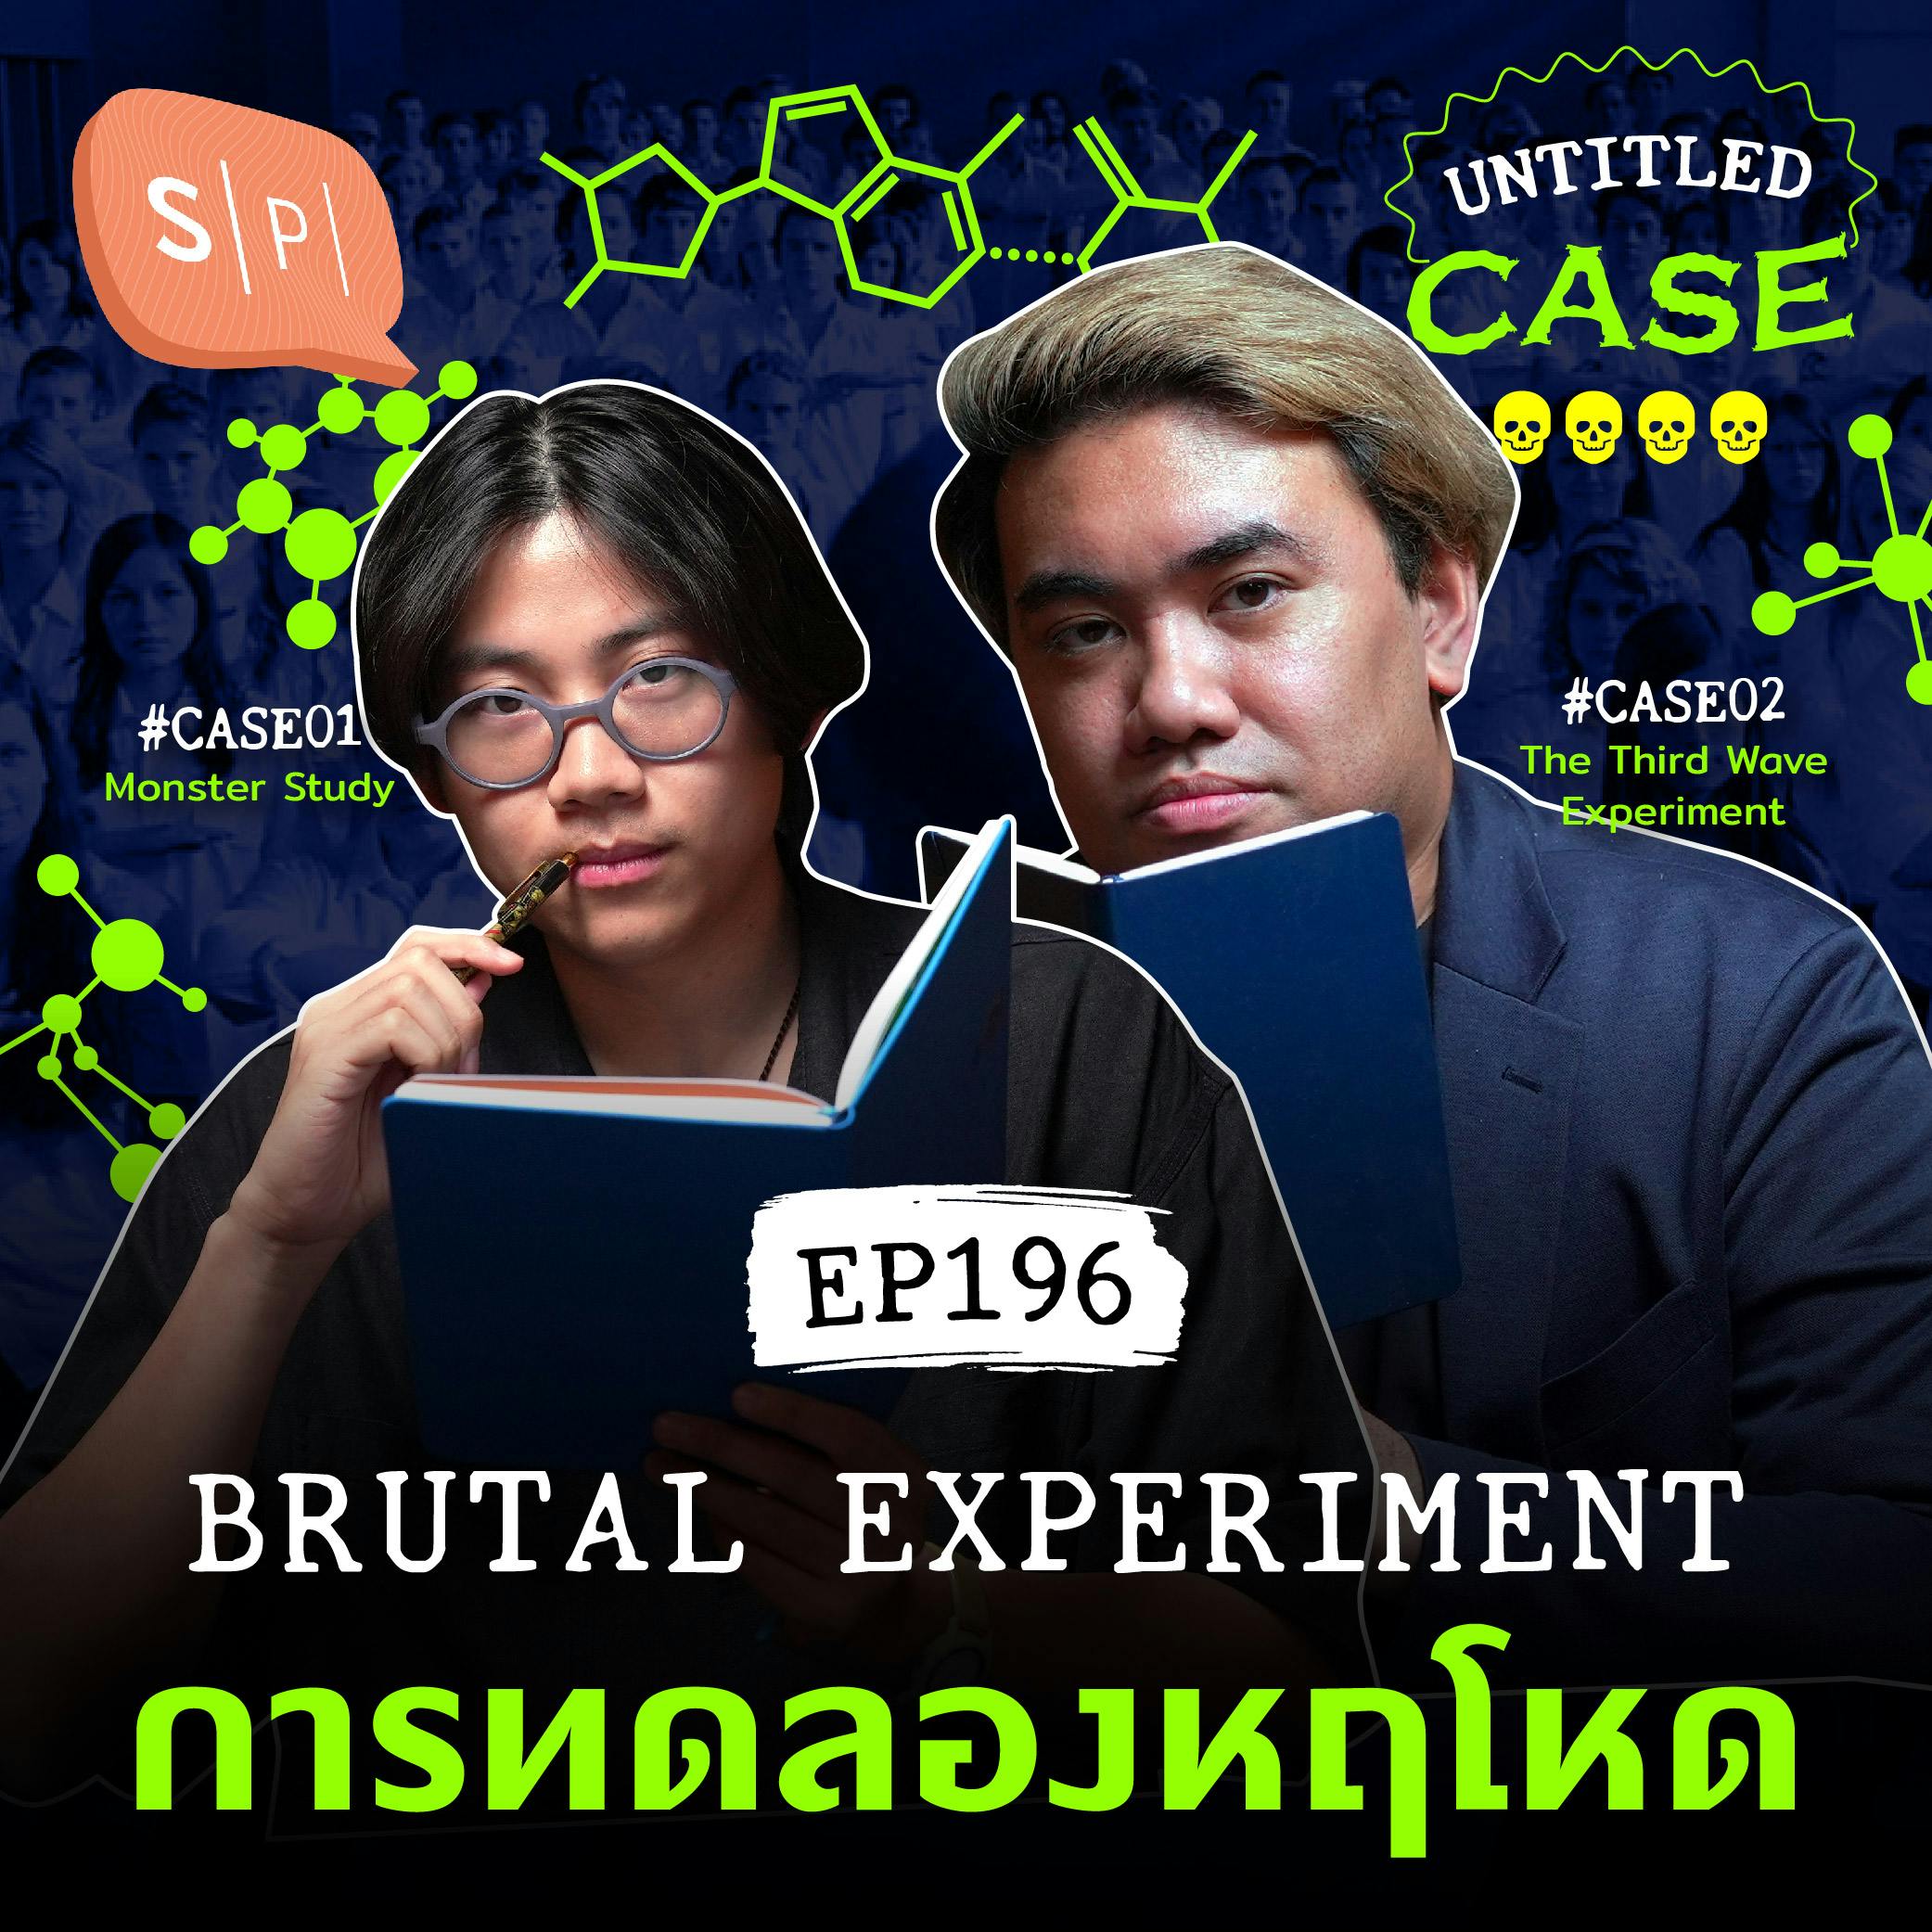 Brutal Experiment การทดลองหฤโหด | Untitled Case EP196